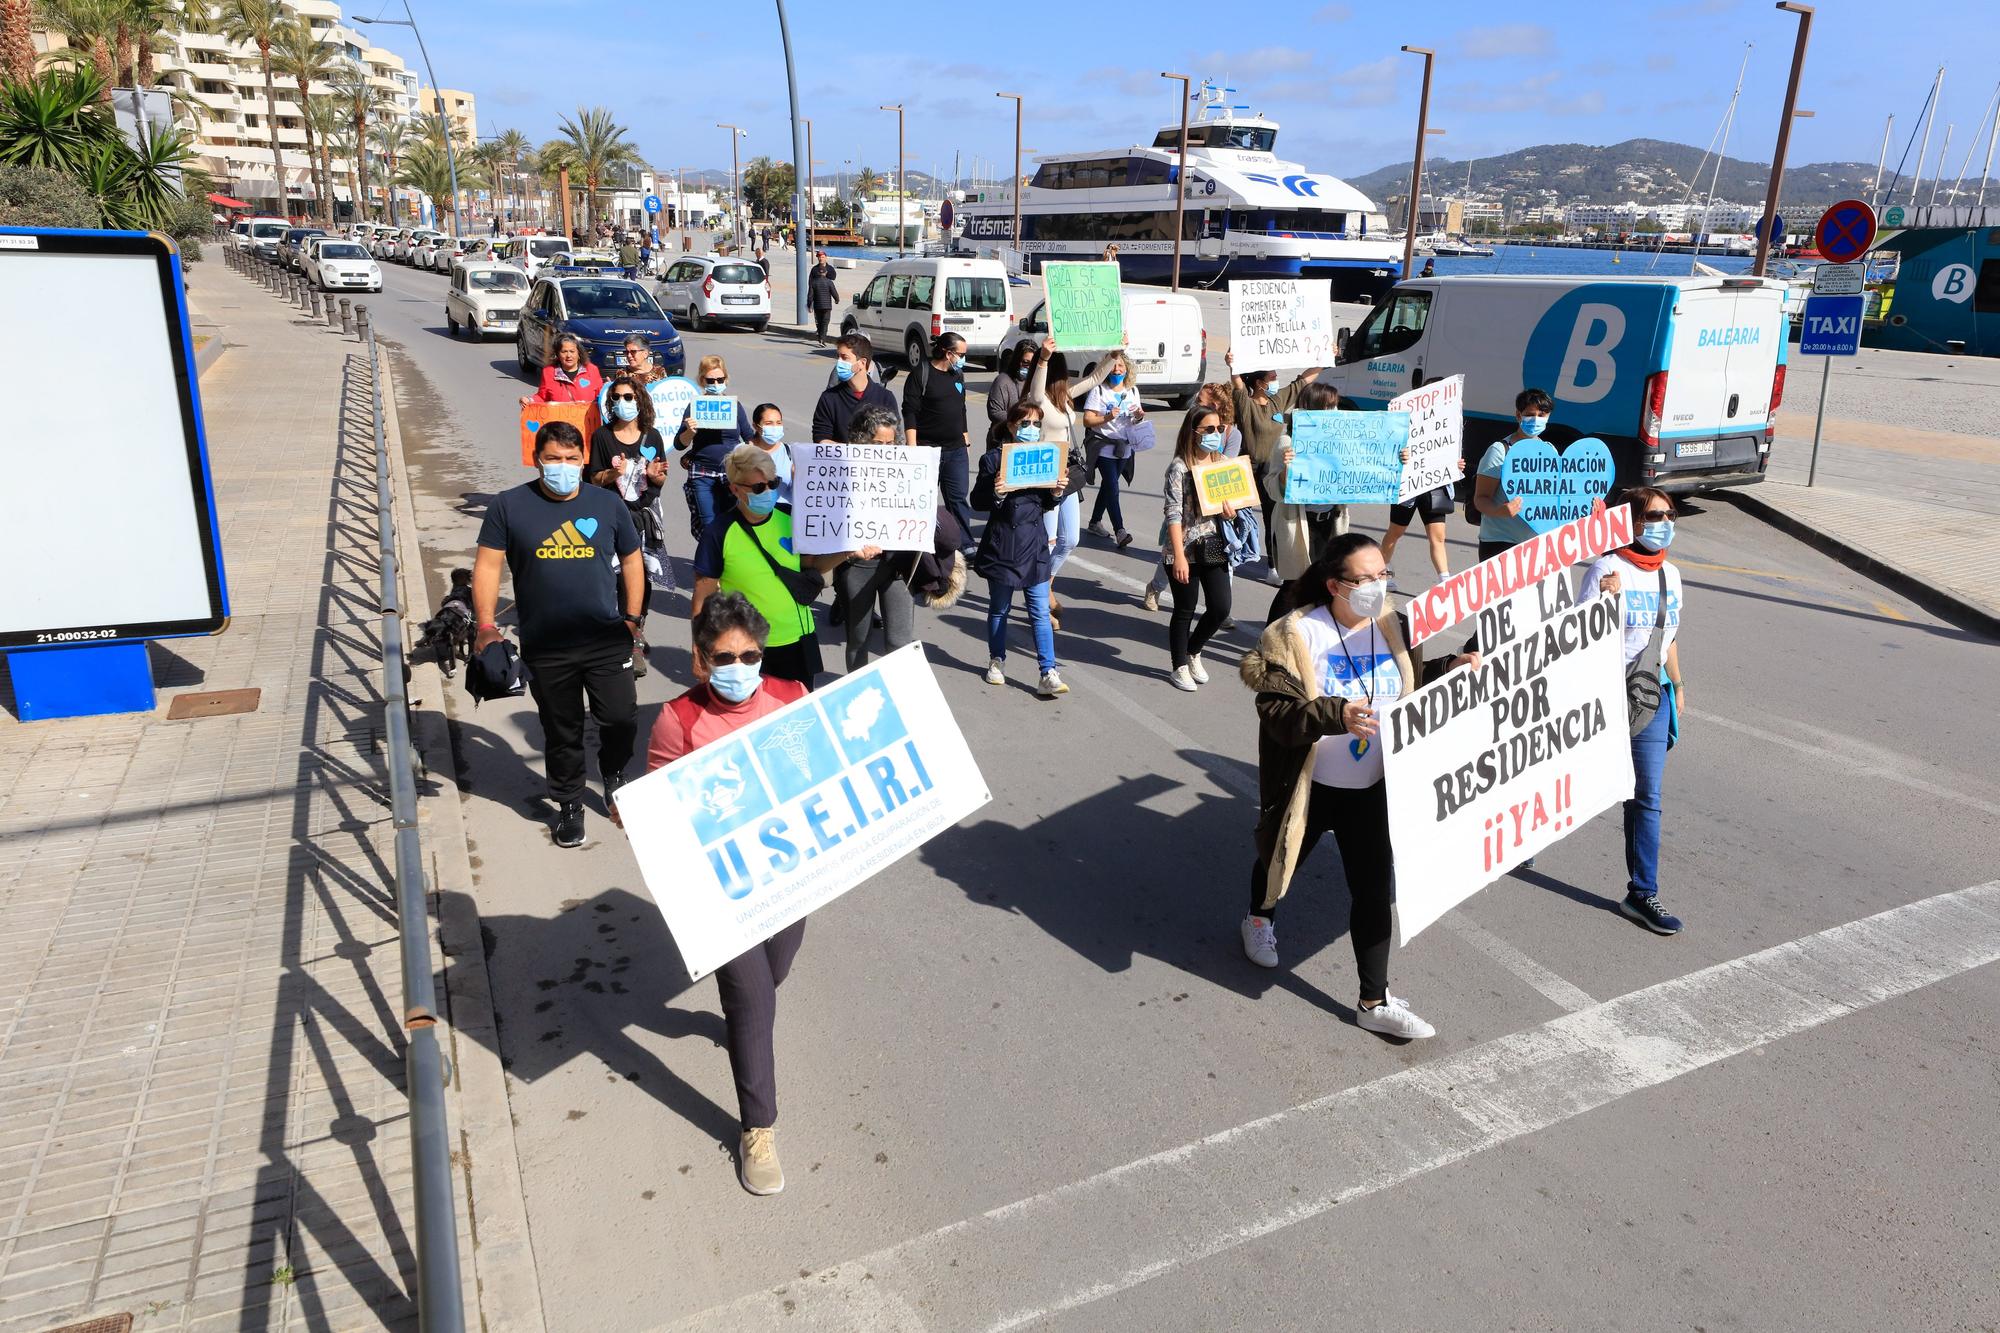 Manifestación de sanitarios por el plus de residencia en Ibiza